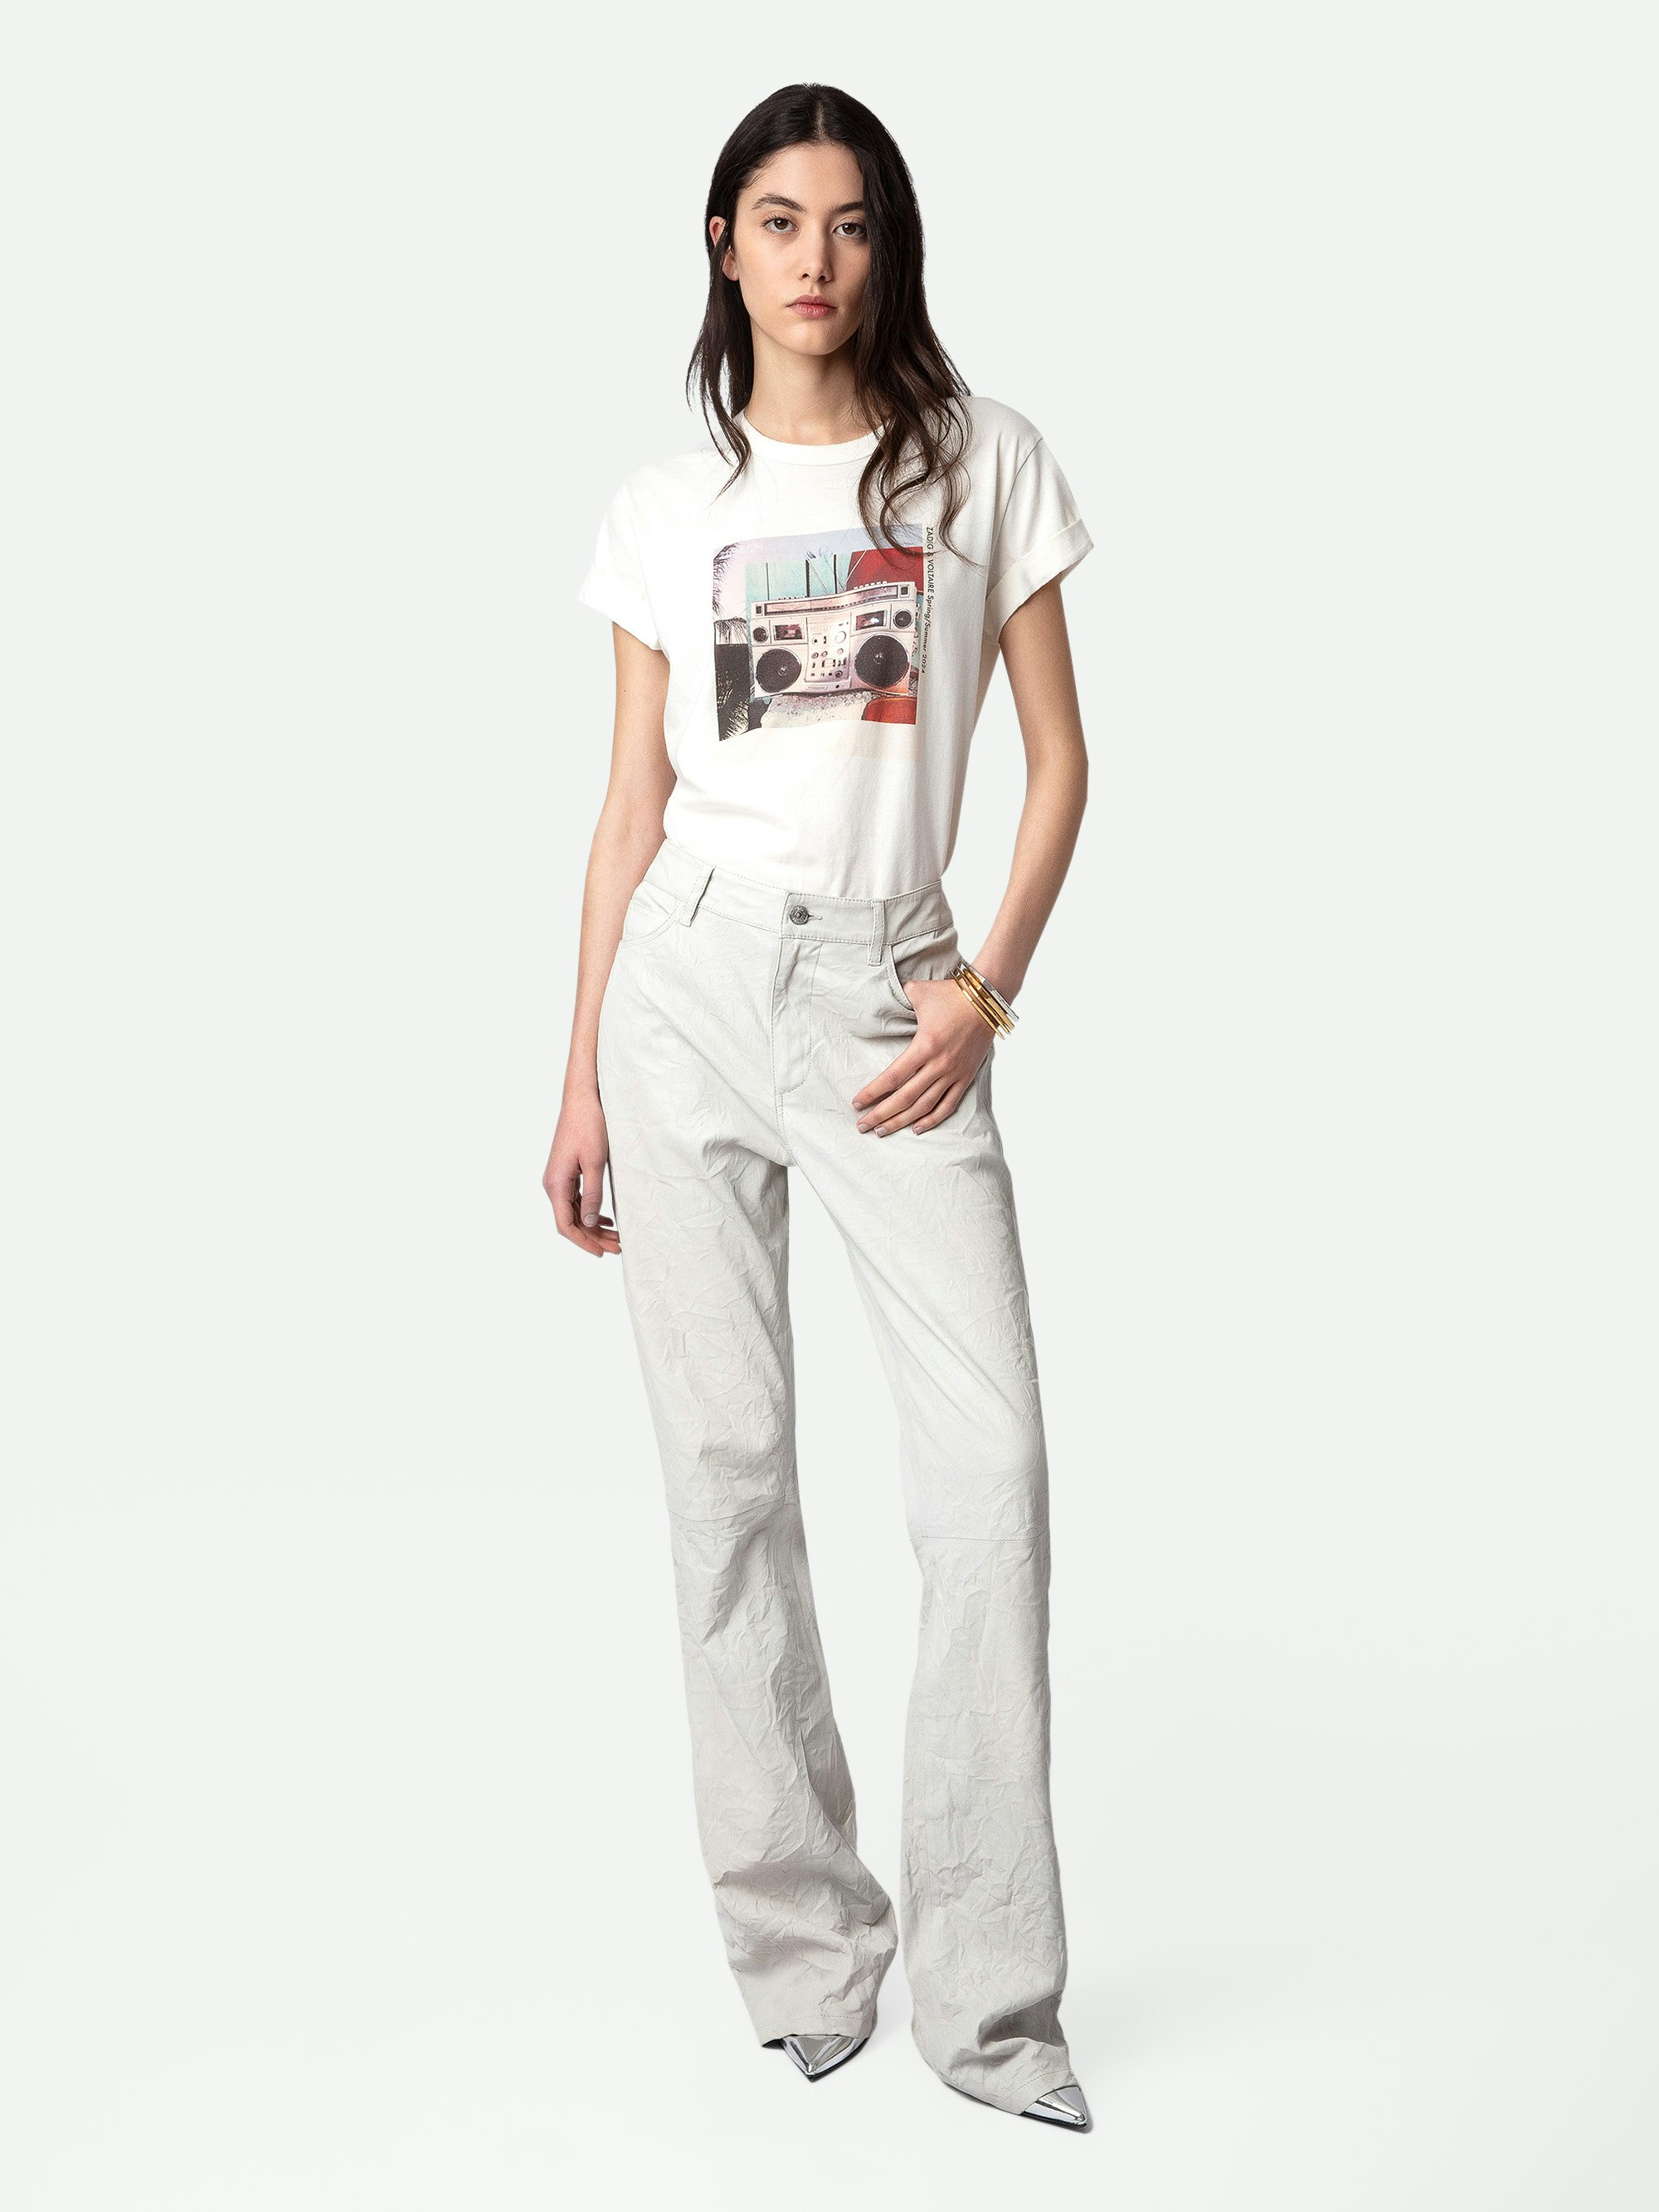 Camiseta Anya Estampado Fotográfico - Camiseta blanca de algodón con mangas cortas y estampado fotográfico Ghetto Blaster.